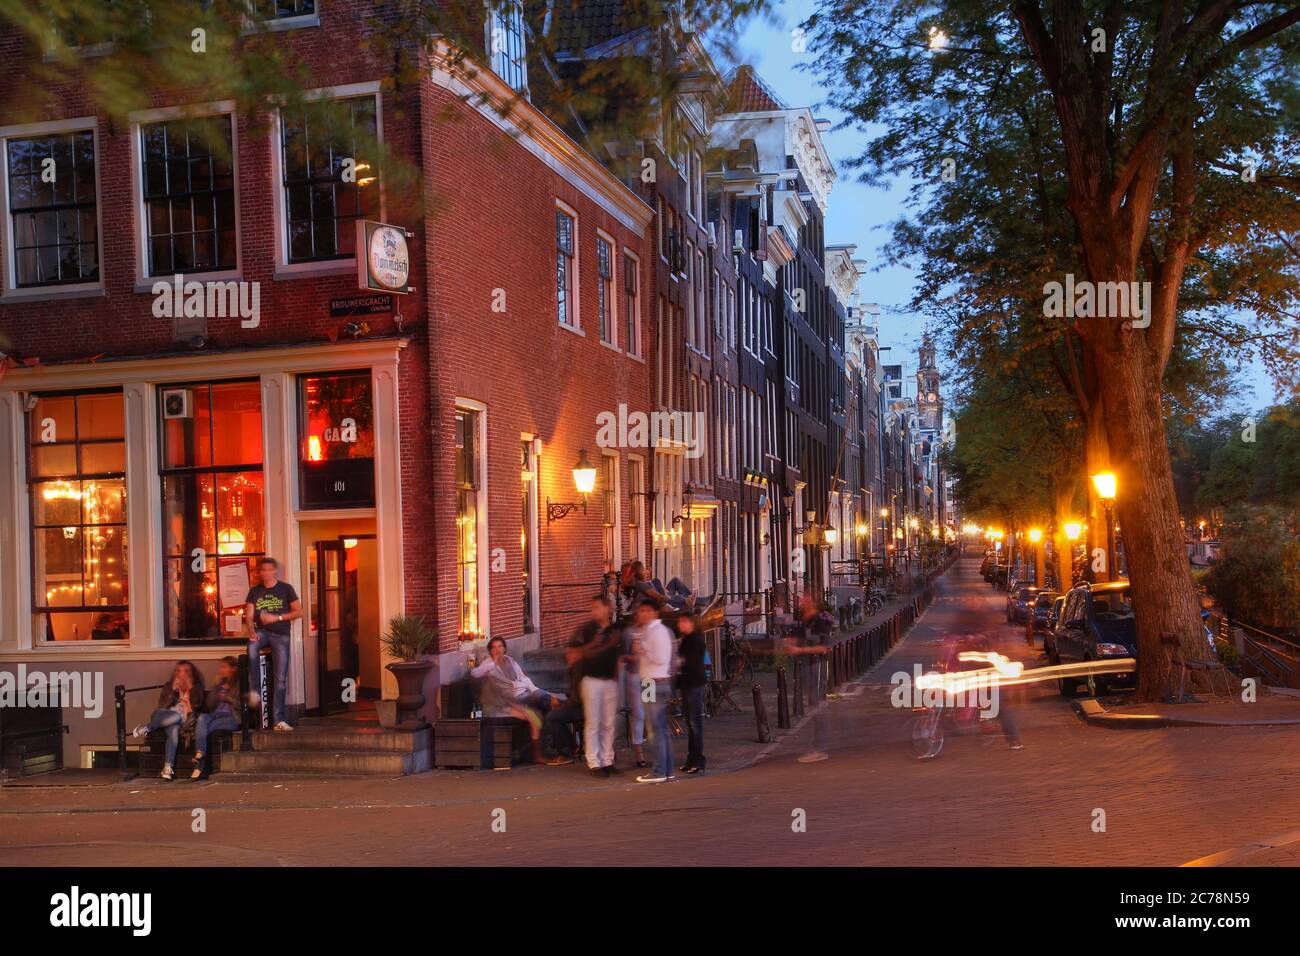 Scena notturna lungo i canali di Amsterdam, Paesi Bassi, durante l'estate. L'immagine raffigura la vita notturna informale tipica di Amsterdam. Foto Stock